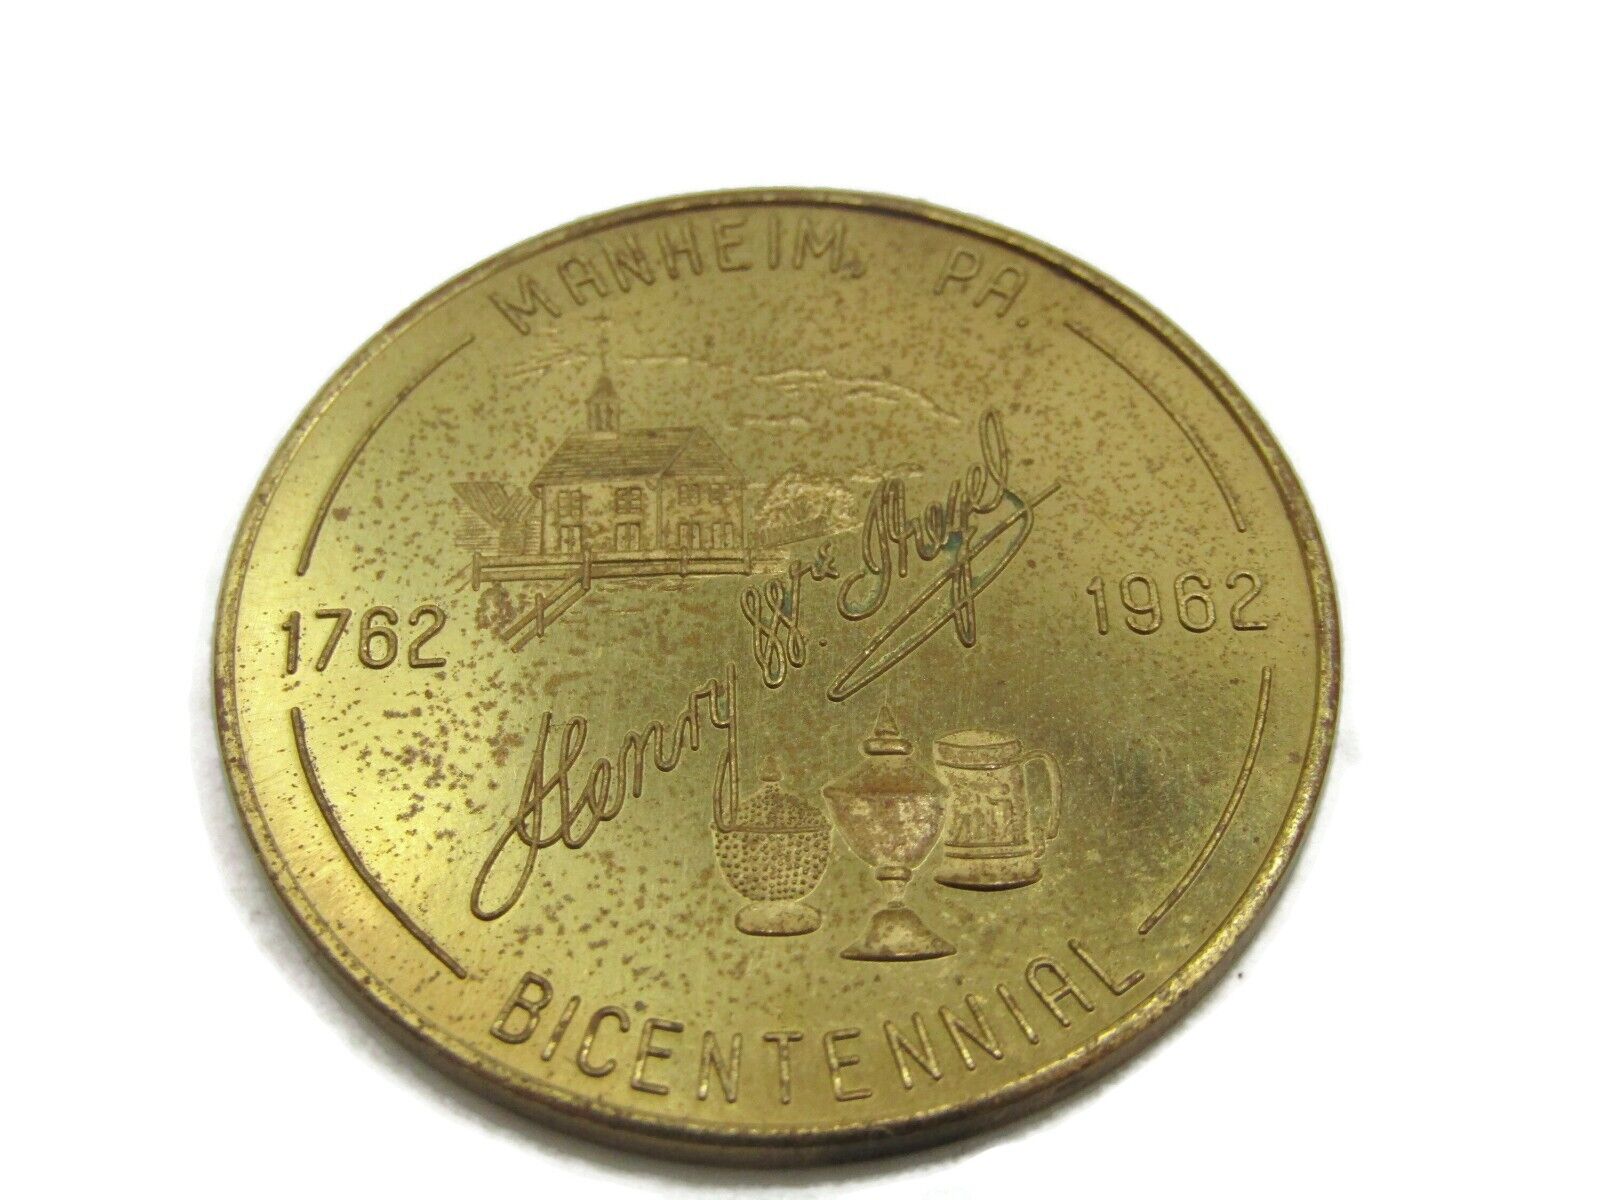 Manheim PA 1962 Bicentennial Coin Souvenir 50 Cent Trade